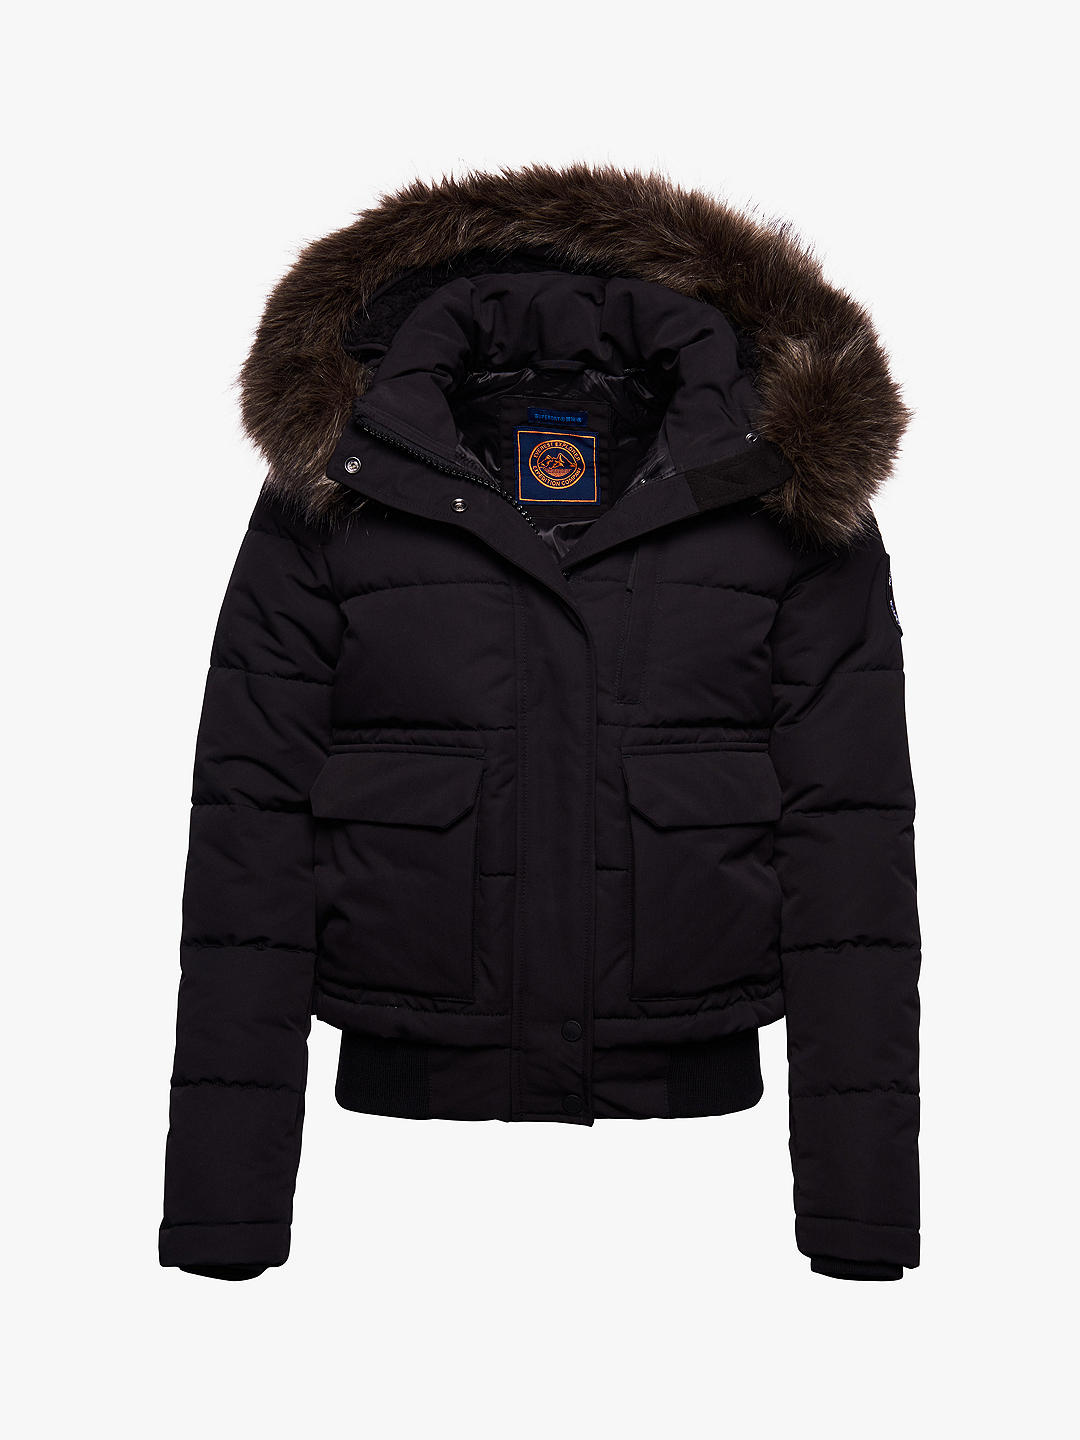 Куртка-бомбер Superdry Everest, черный/коричневый